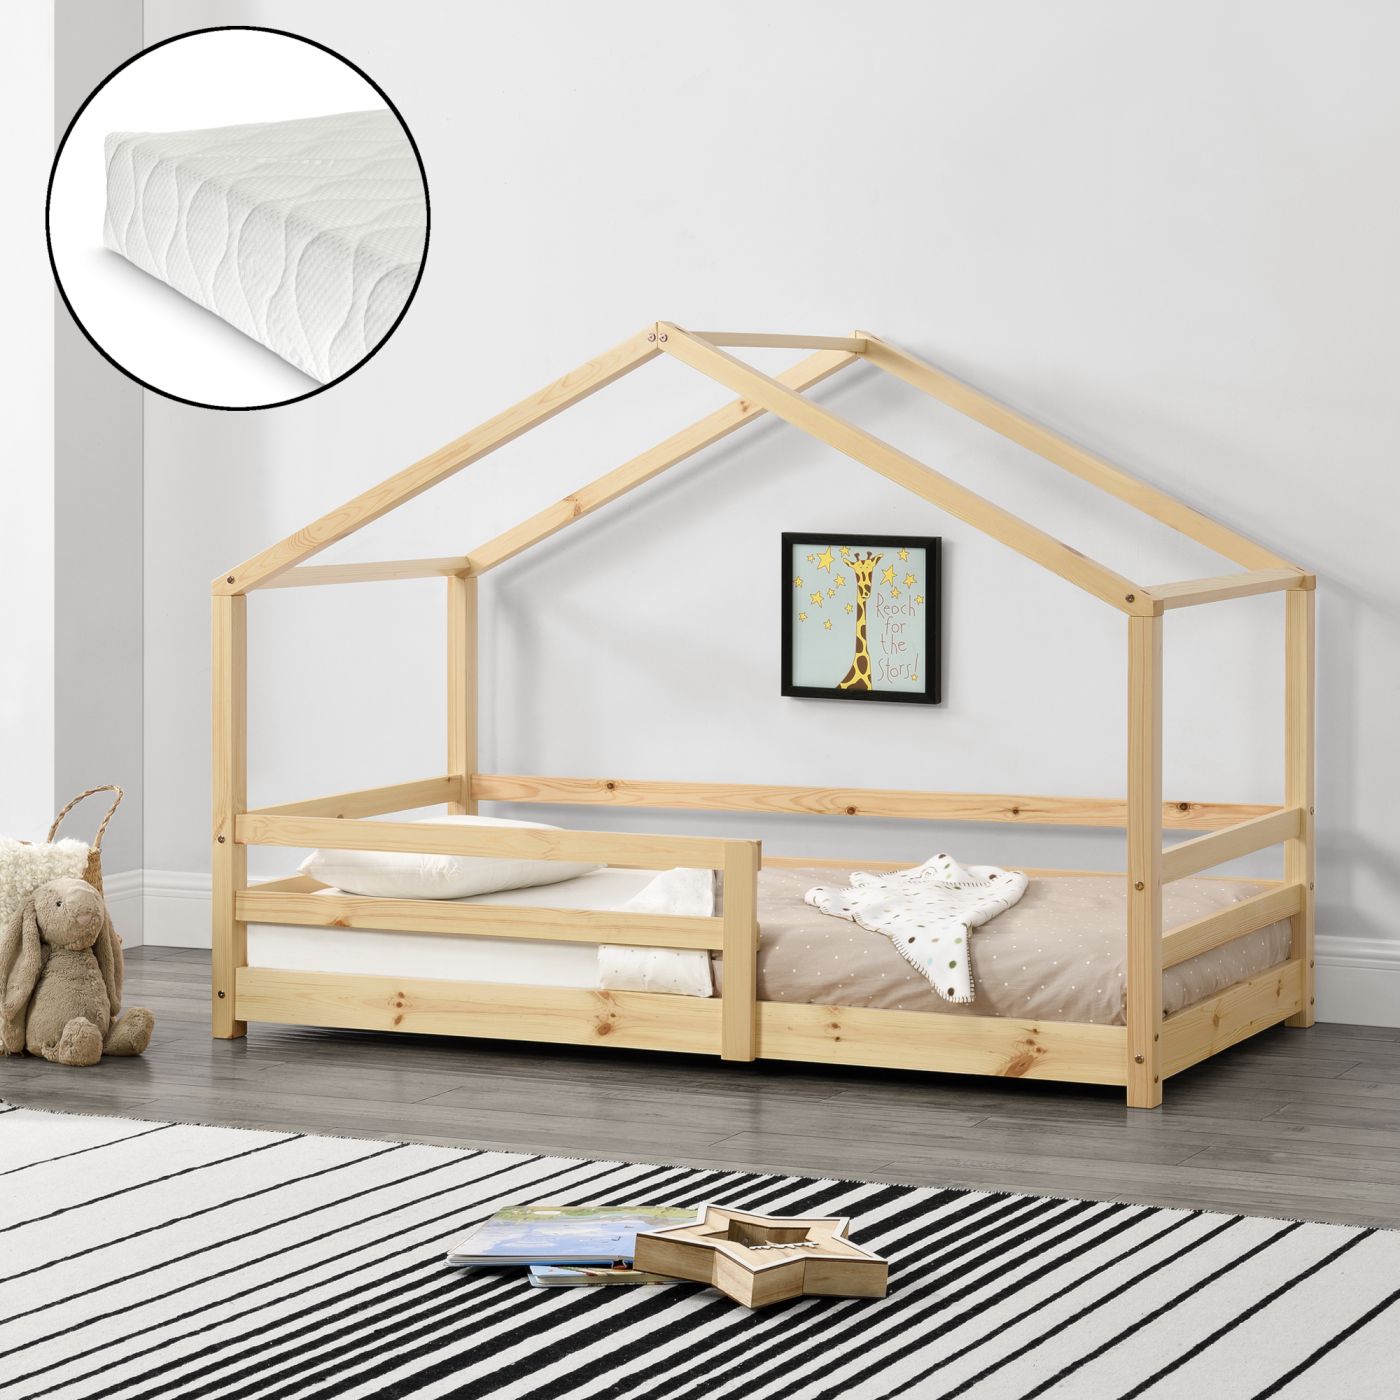 Ontoegankelijk beheerder Triatleet Kinderbed Knätten grenen huisbed met matras 90x200 cm hout | premiumXL